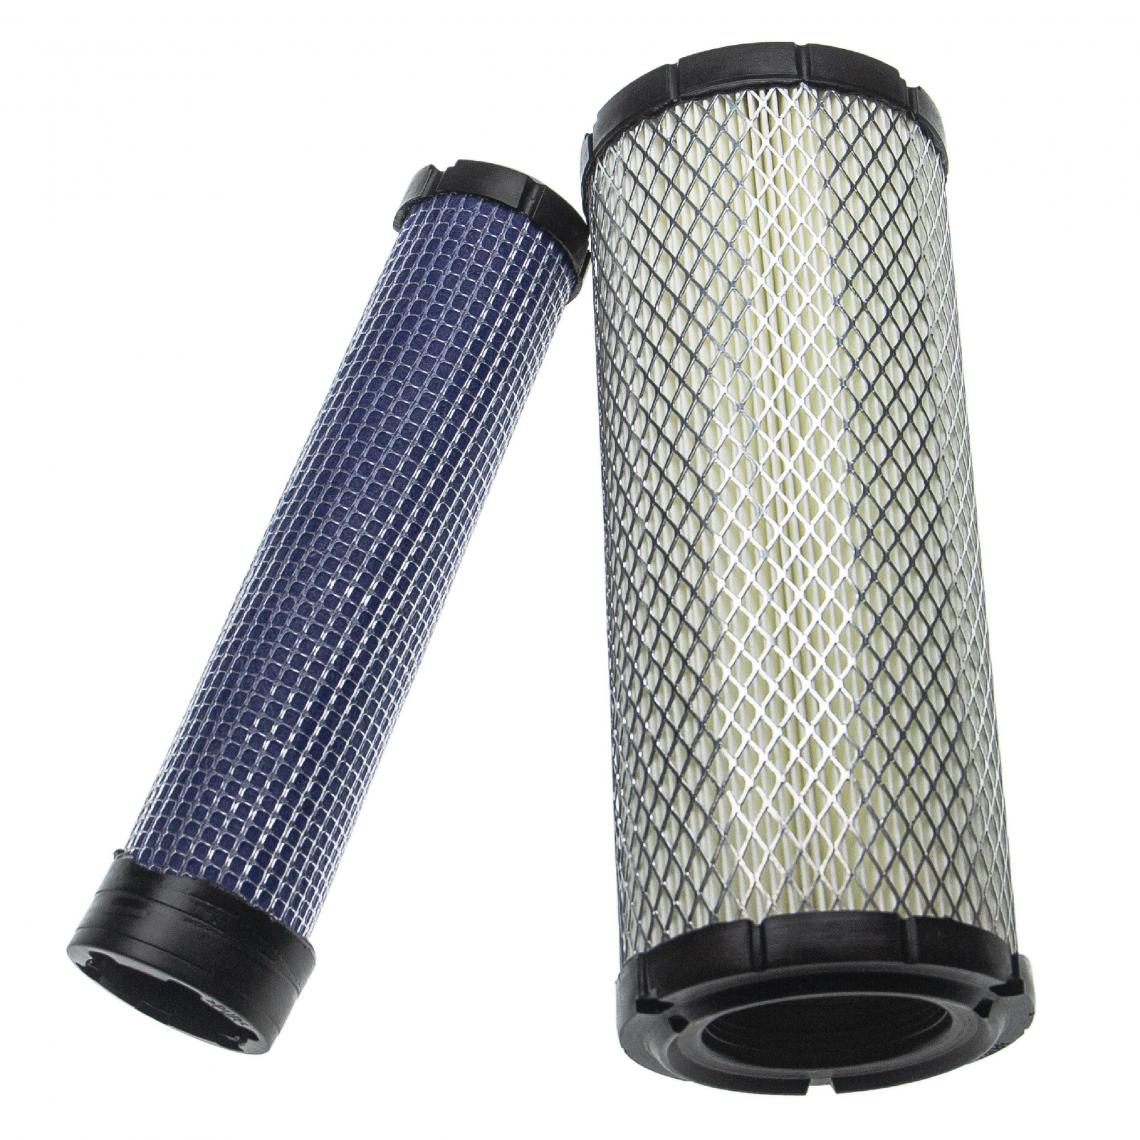 Vhbw - vhbw Lot de filtres compatible avec Yanmar VIO55-5 Excavator engin de chantier; 1x filtre interne, 1x filtre extérieur - Autre appareil de mesure